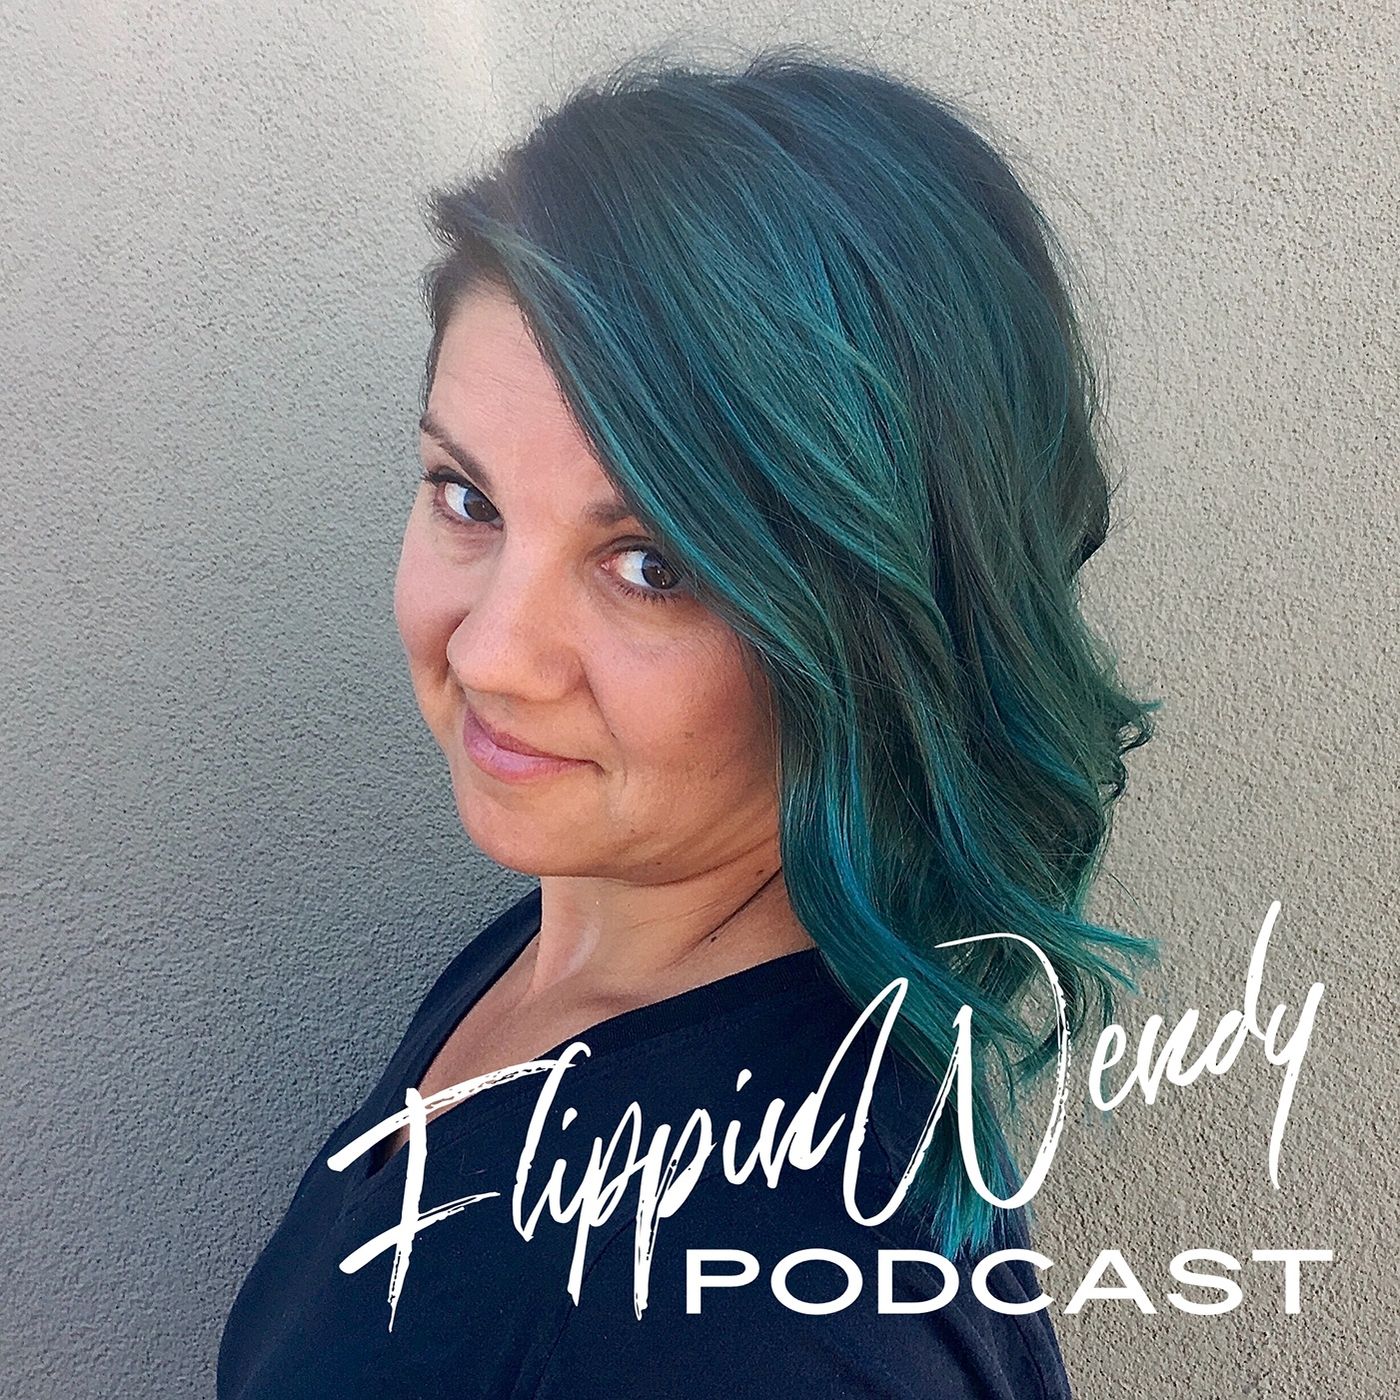 FlippinWendy Podcast